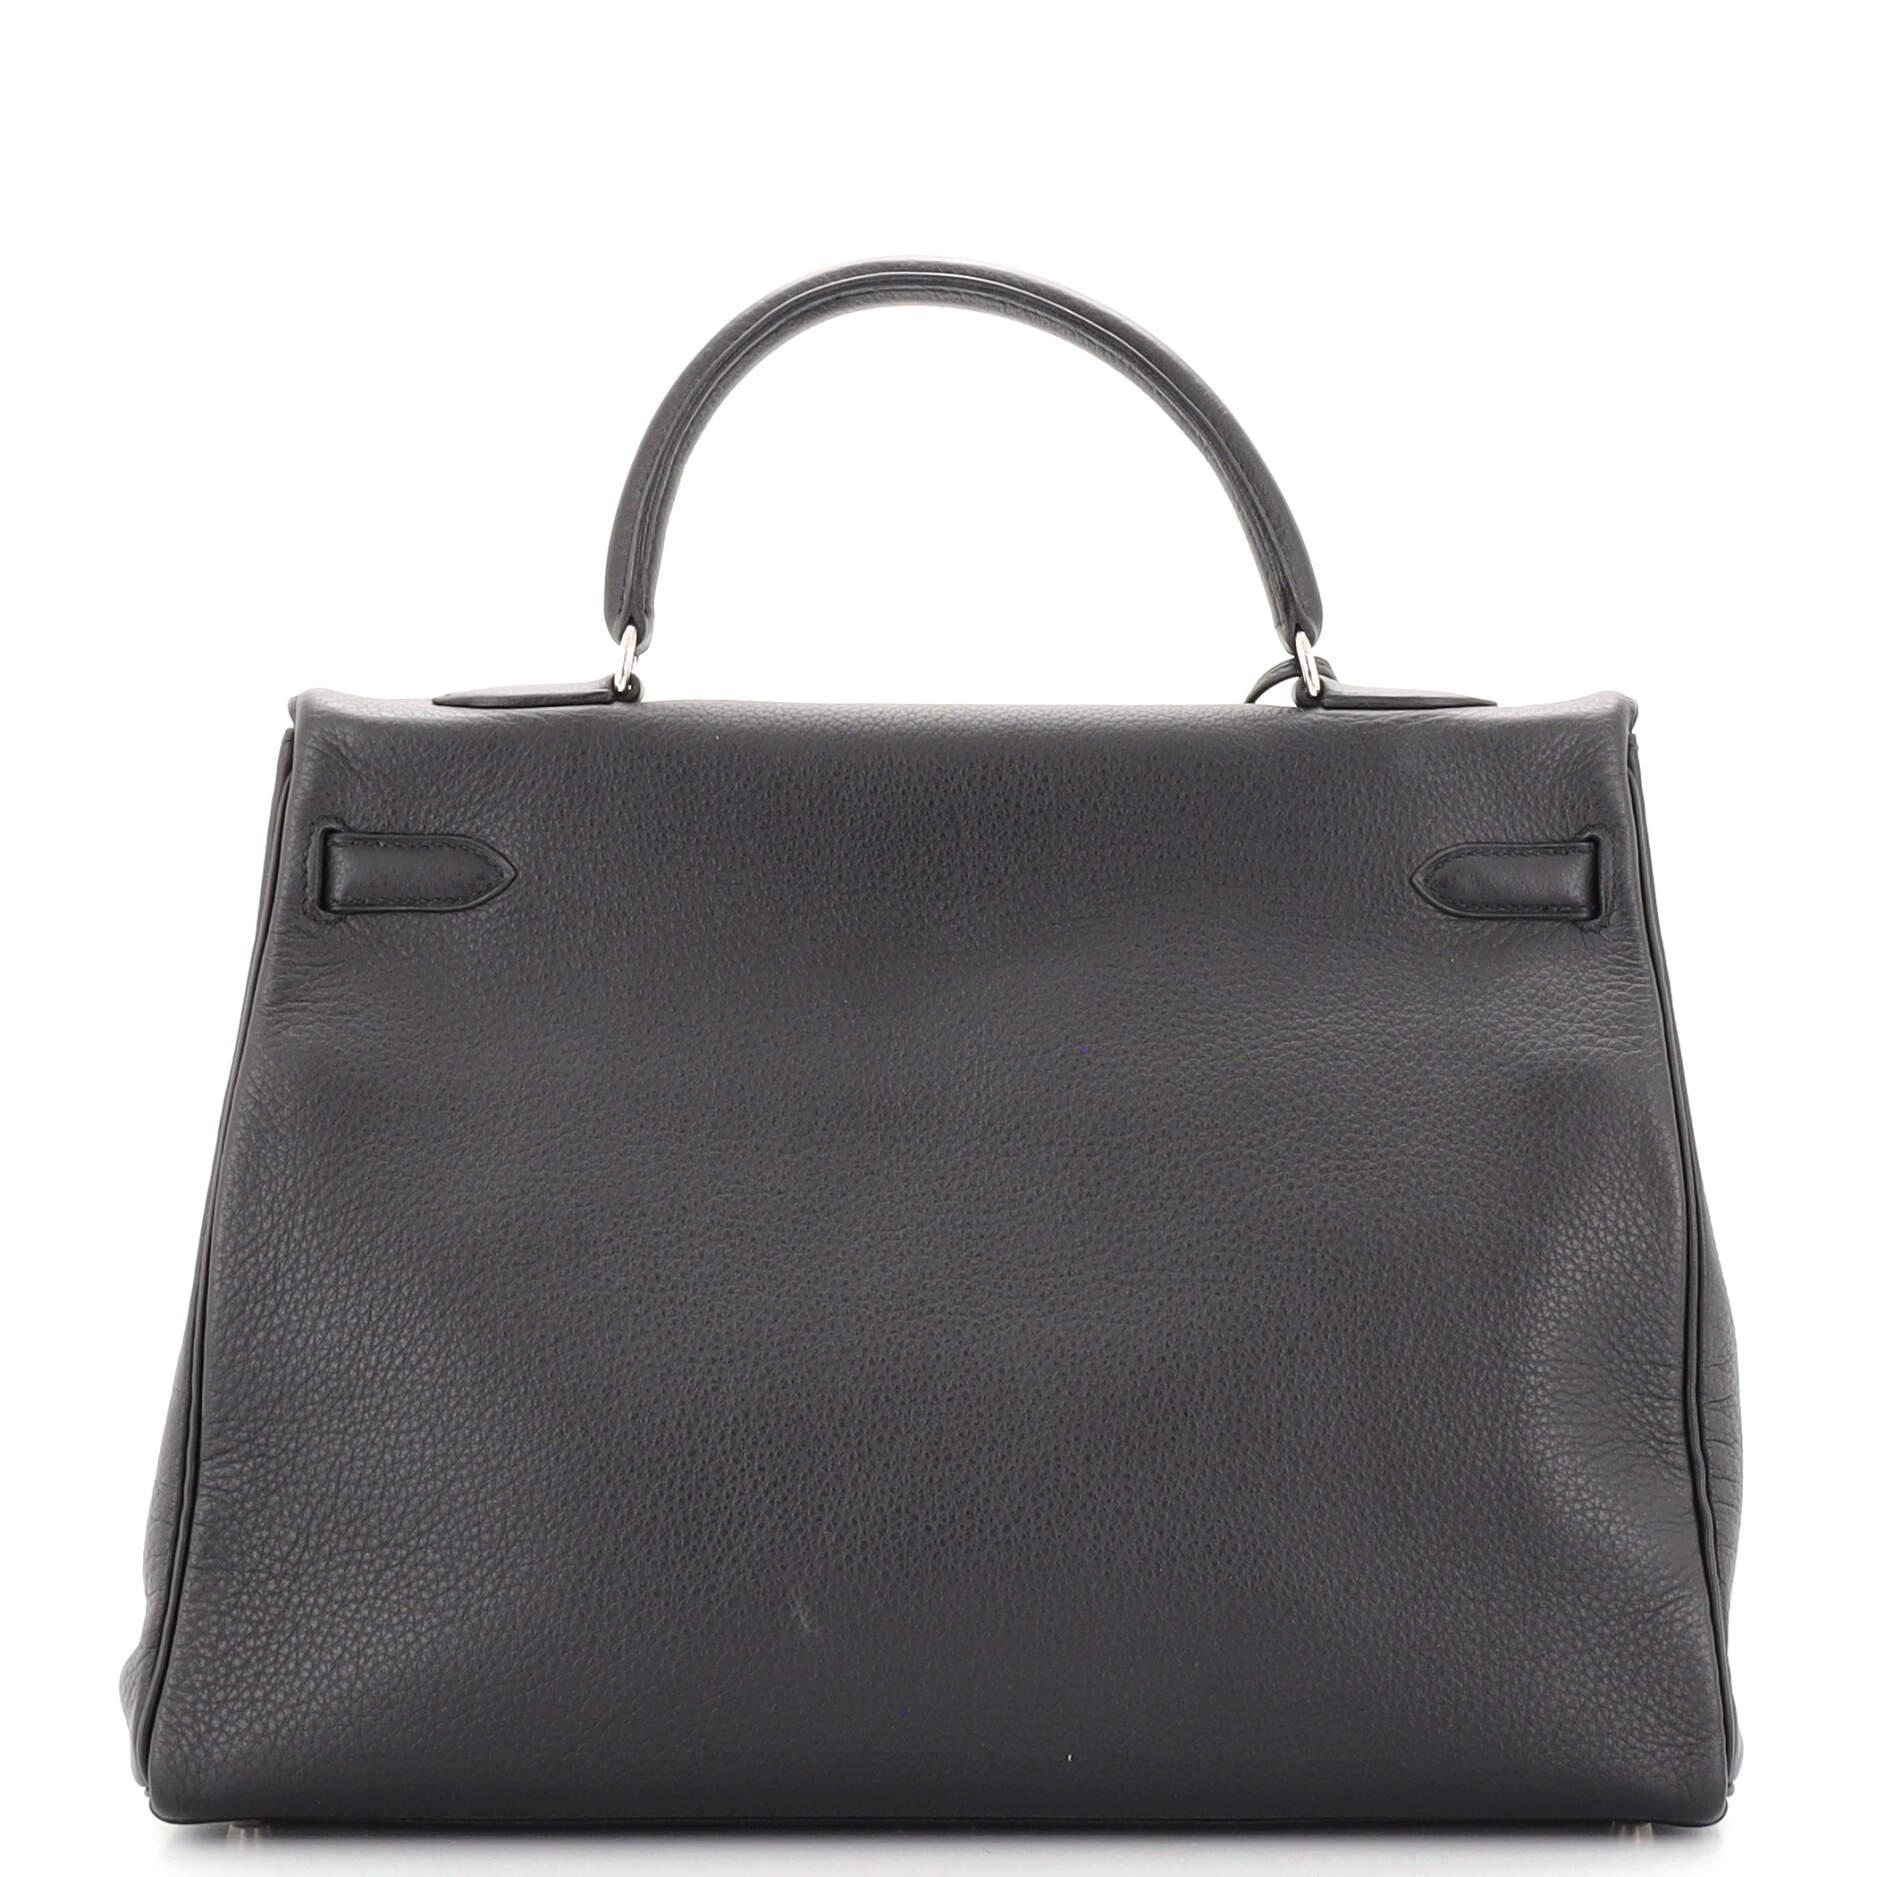 Women's or Men's Hermes Kelly Handbag Noir Clemence with Palladium Hardware 35